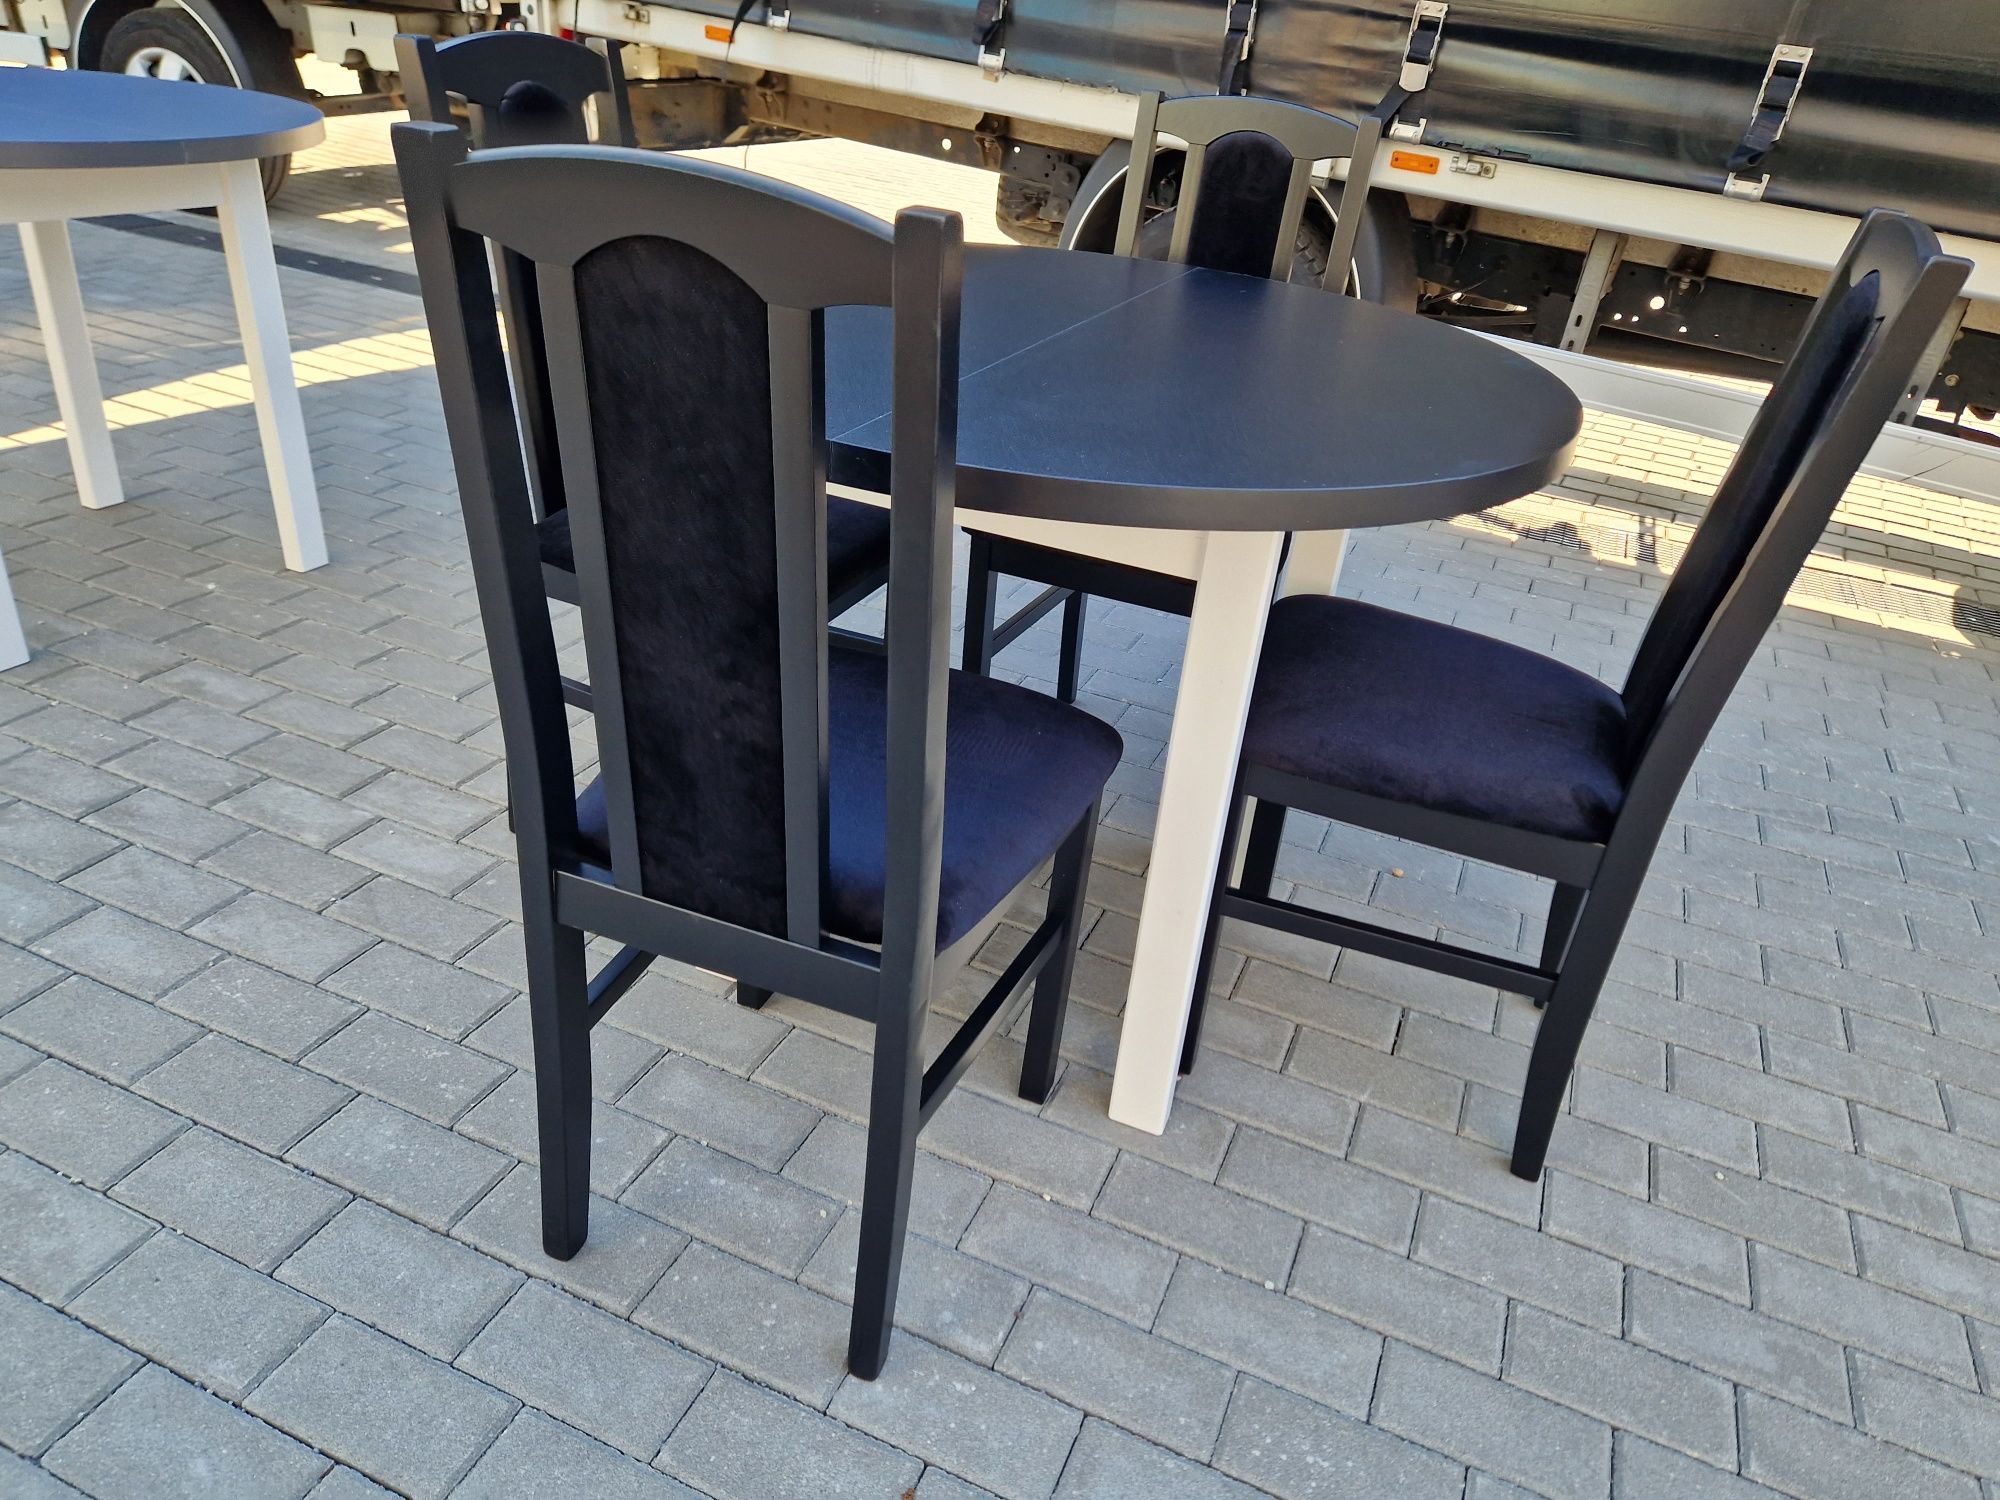 Nowe : Stół okrągły + 4 krzesła, biały/czarny + czarny , dostawa PL